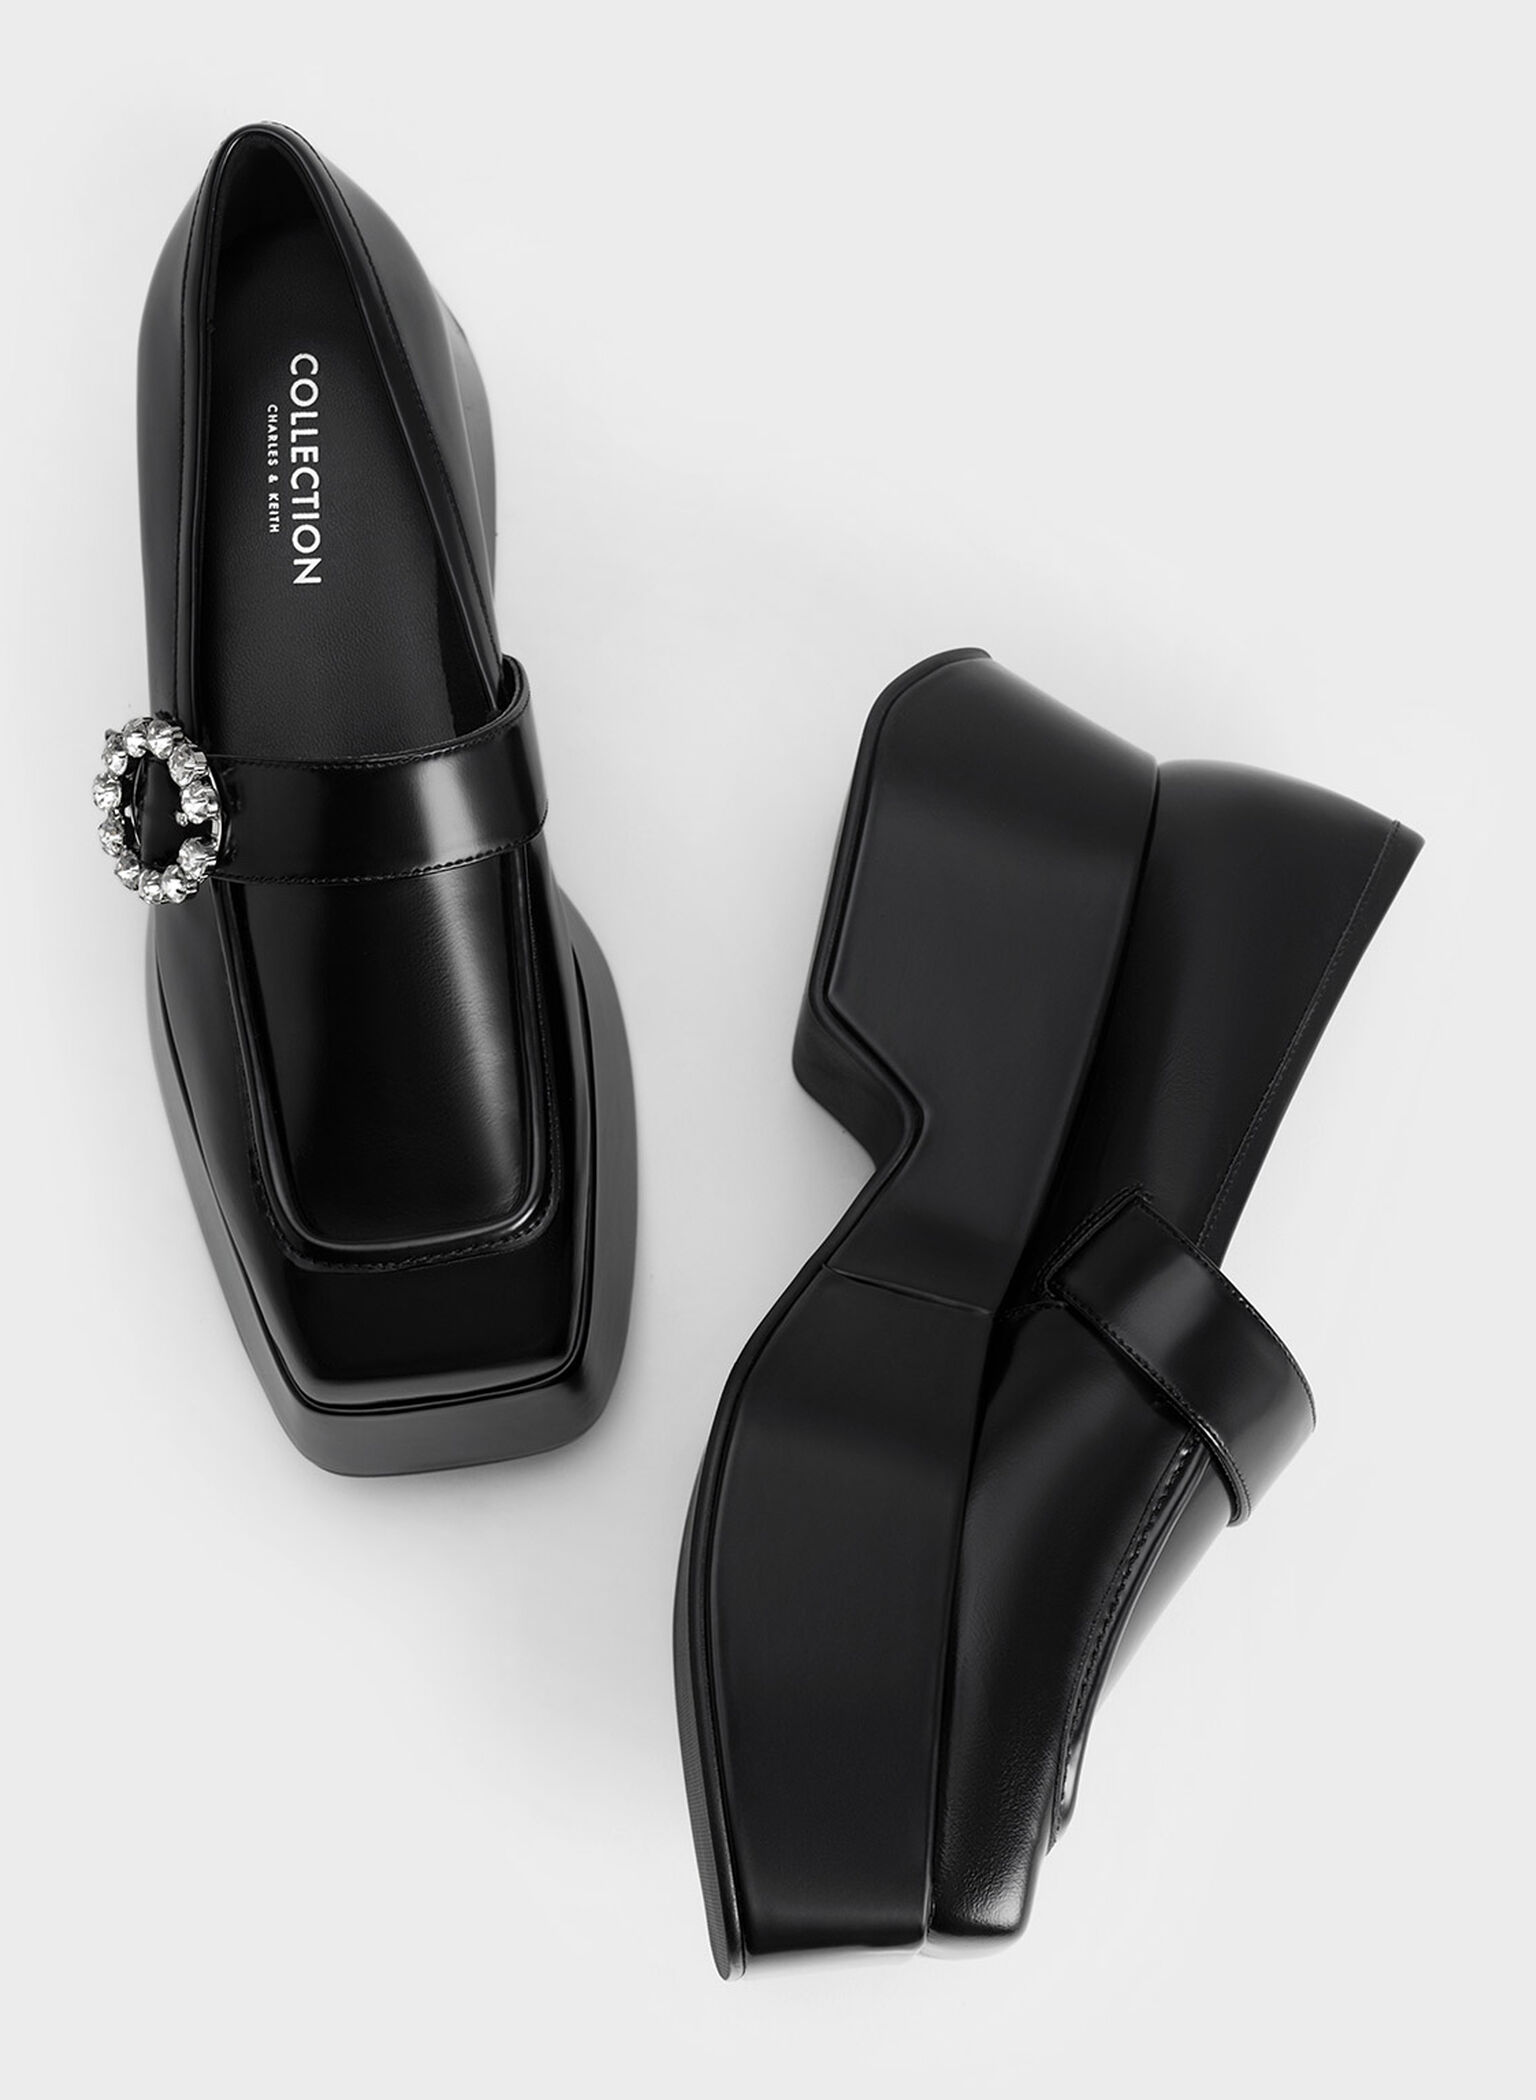 Gem-Embellished Chunky Platform Loafers, Black, hi-res